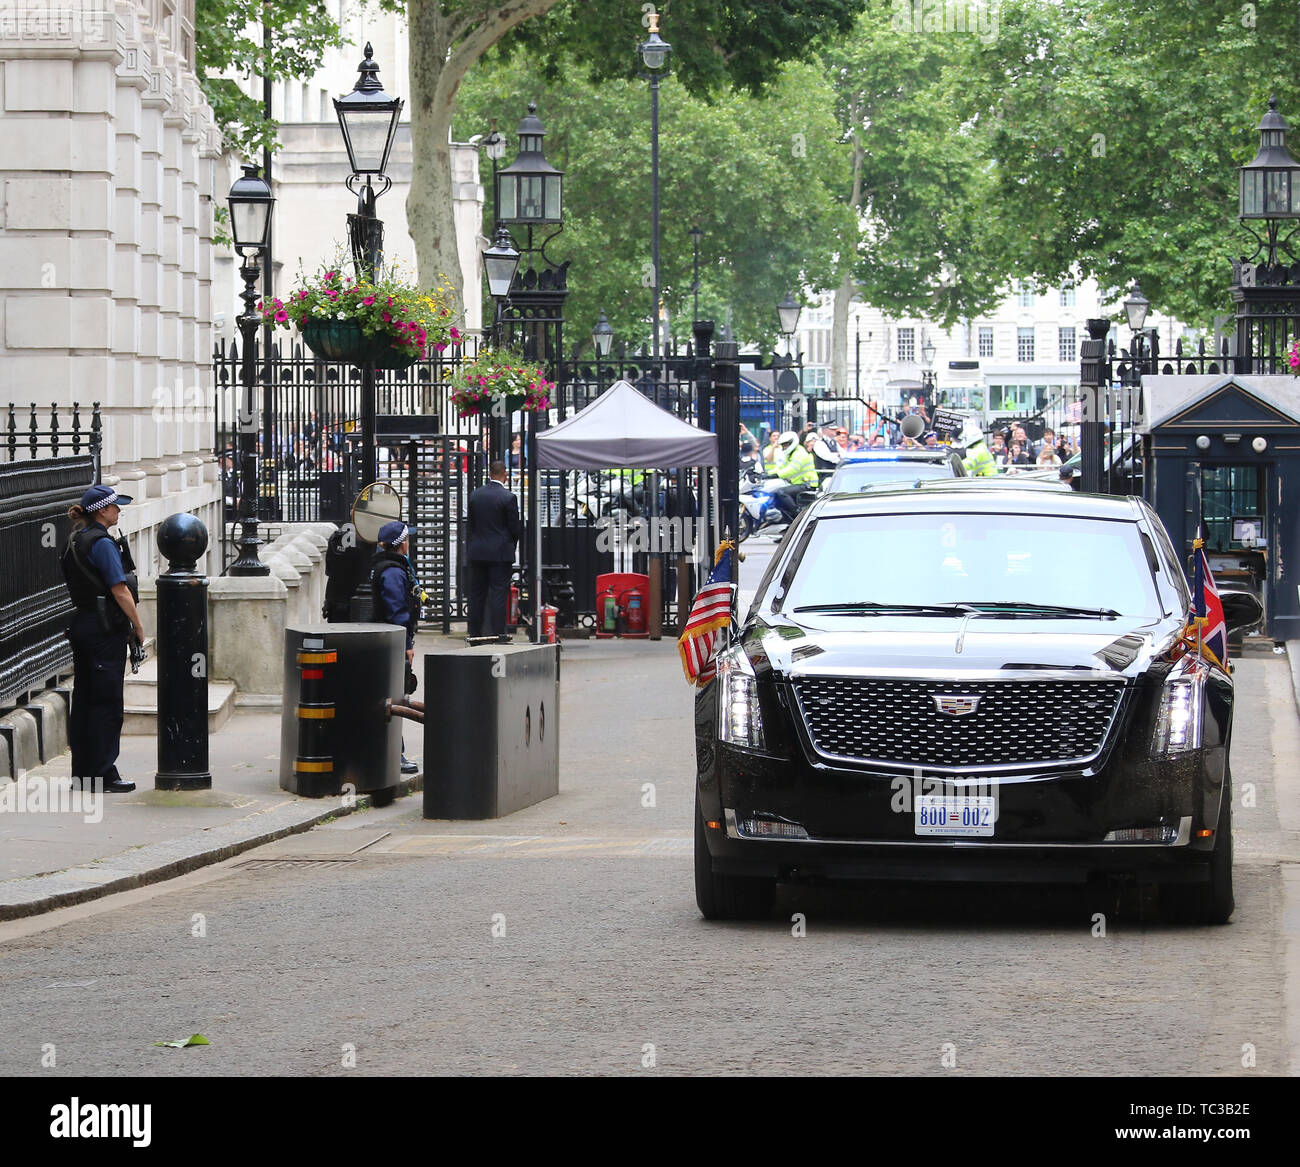 La Bestia, Stati Uniti d'America visita presidenziale per il Regno Unito, Downing Street, Londra, Regno Unito, 04 giugno 2019, Foto di Richard Goldschmidt Foto Stock